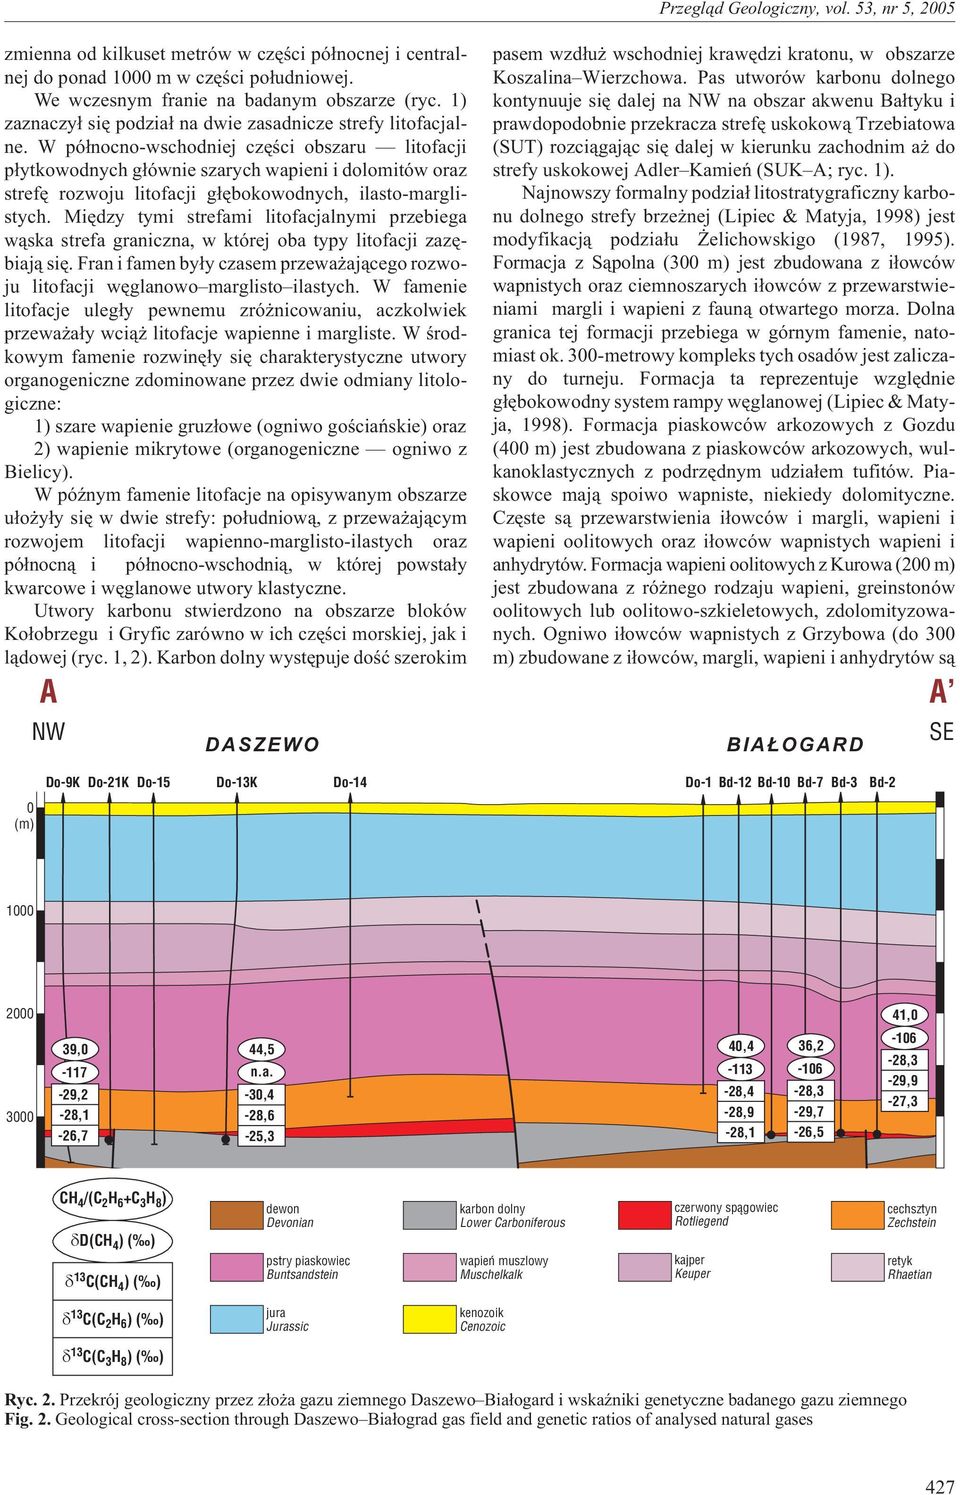 W pó³nocno-wschodniej czêœci obszaru litofacji p³ytkowodnych g³ównie szarych wapieni i dolomitów oraz strefê rozwoju litofacji g³êbokowodnych, ilasto-marglistych.